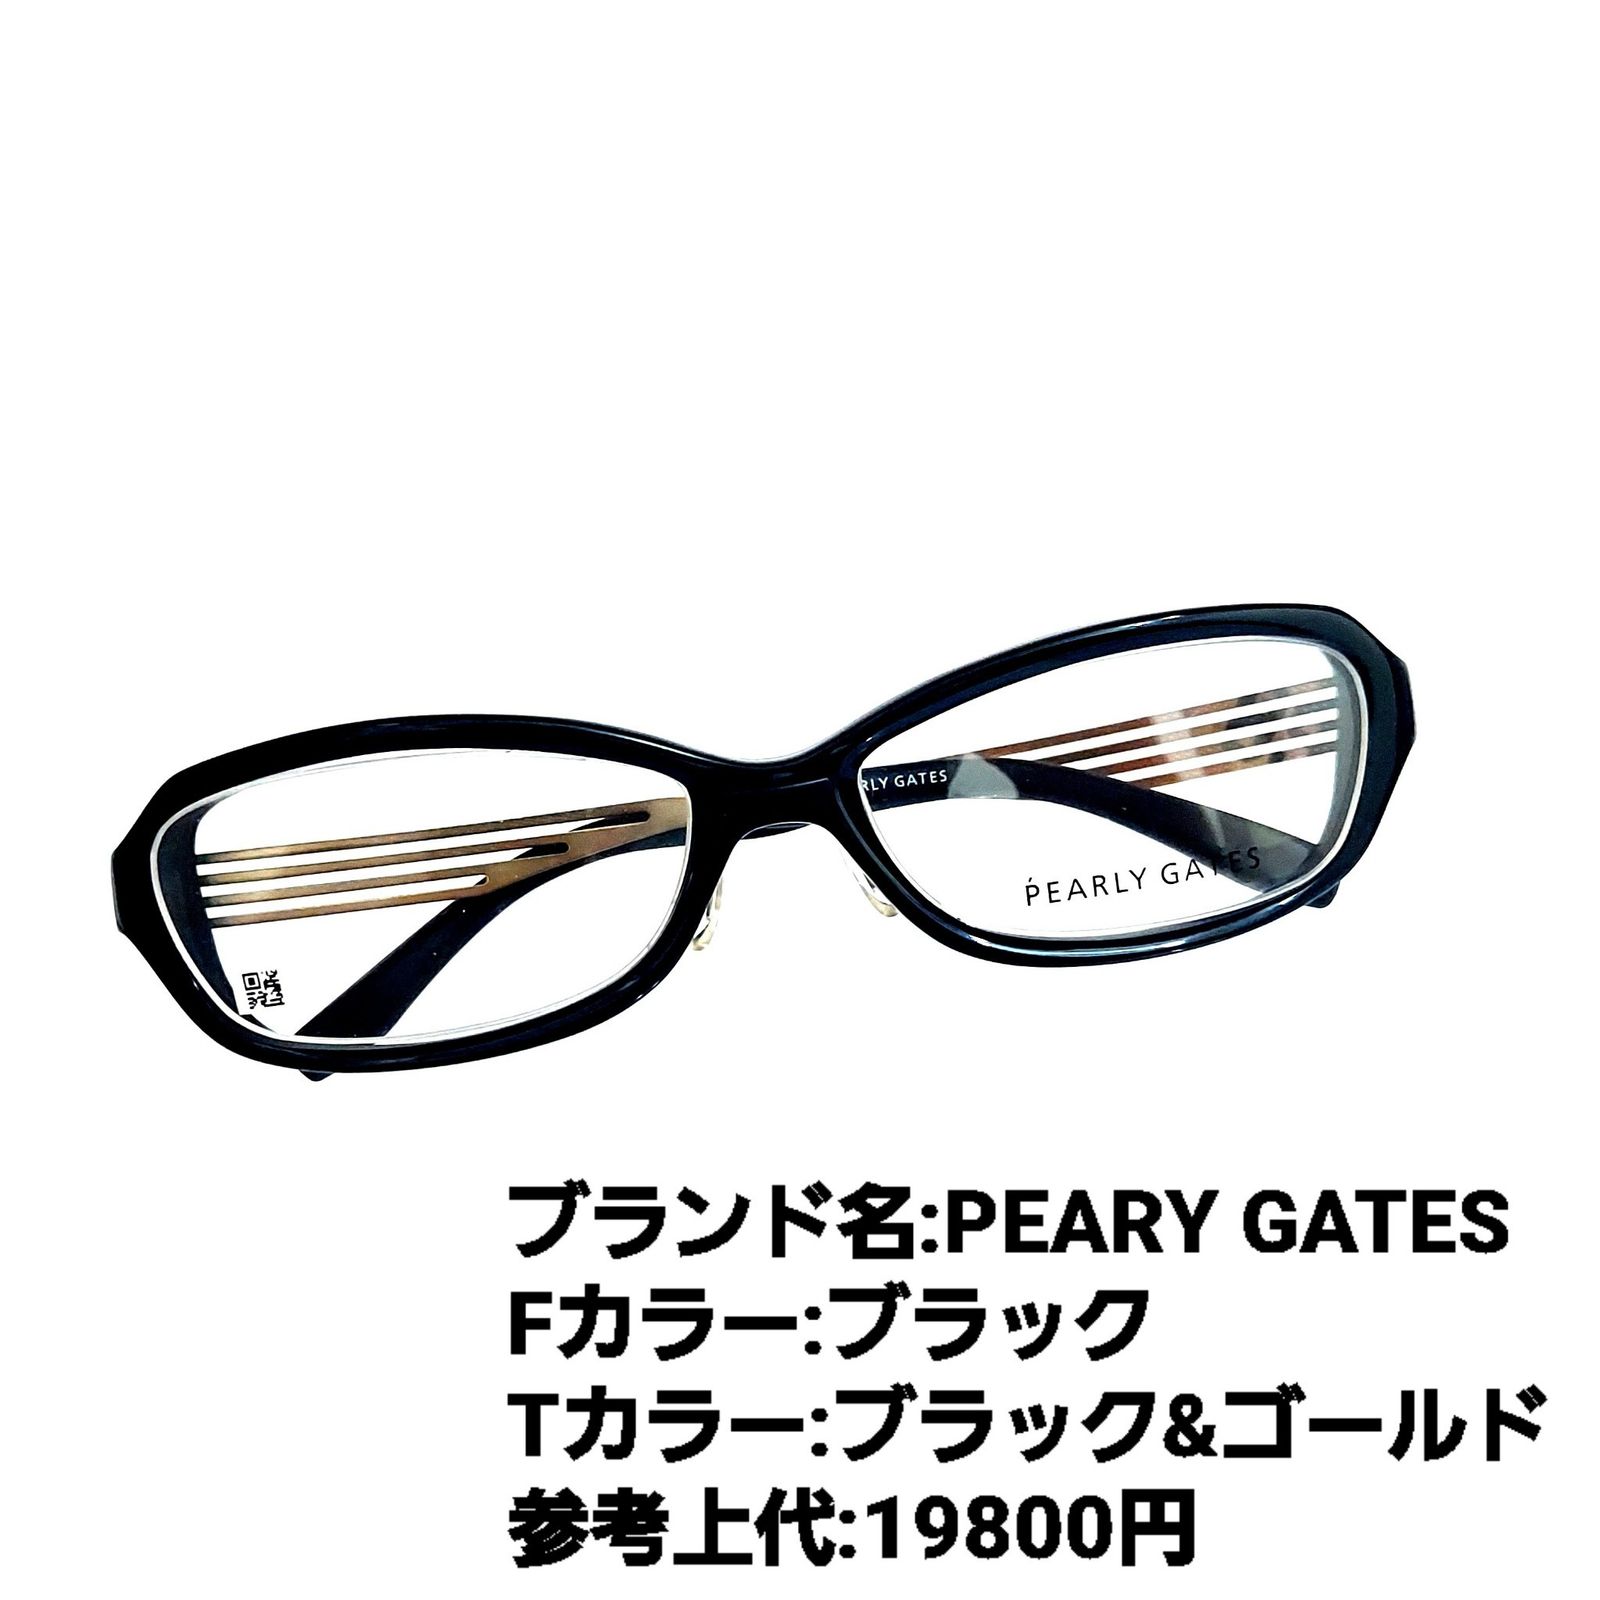 パネル No.1223-メガネ PEARY GATES【フレームのみ価格】 - 通販